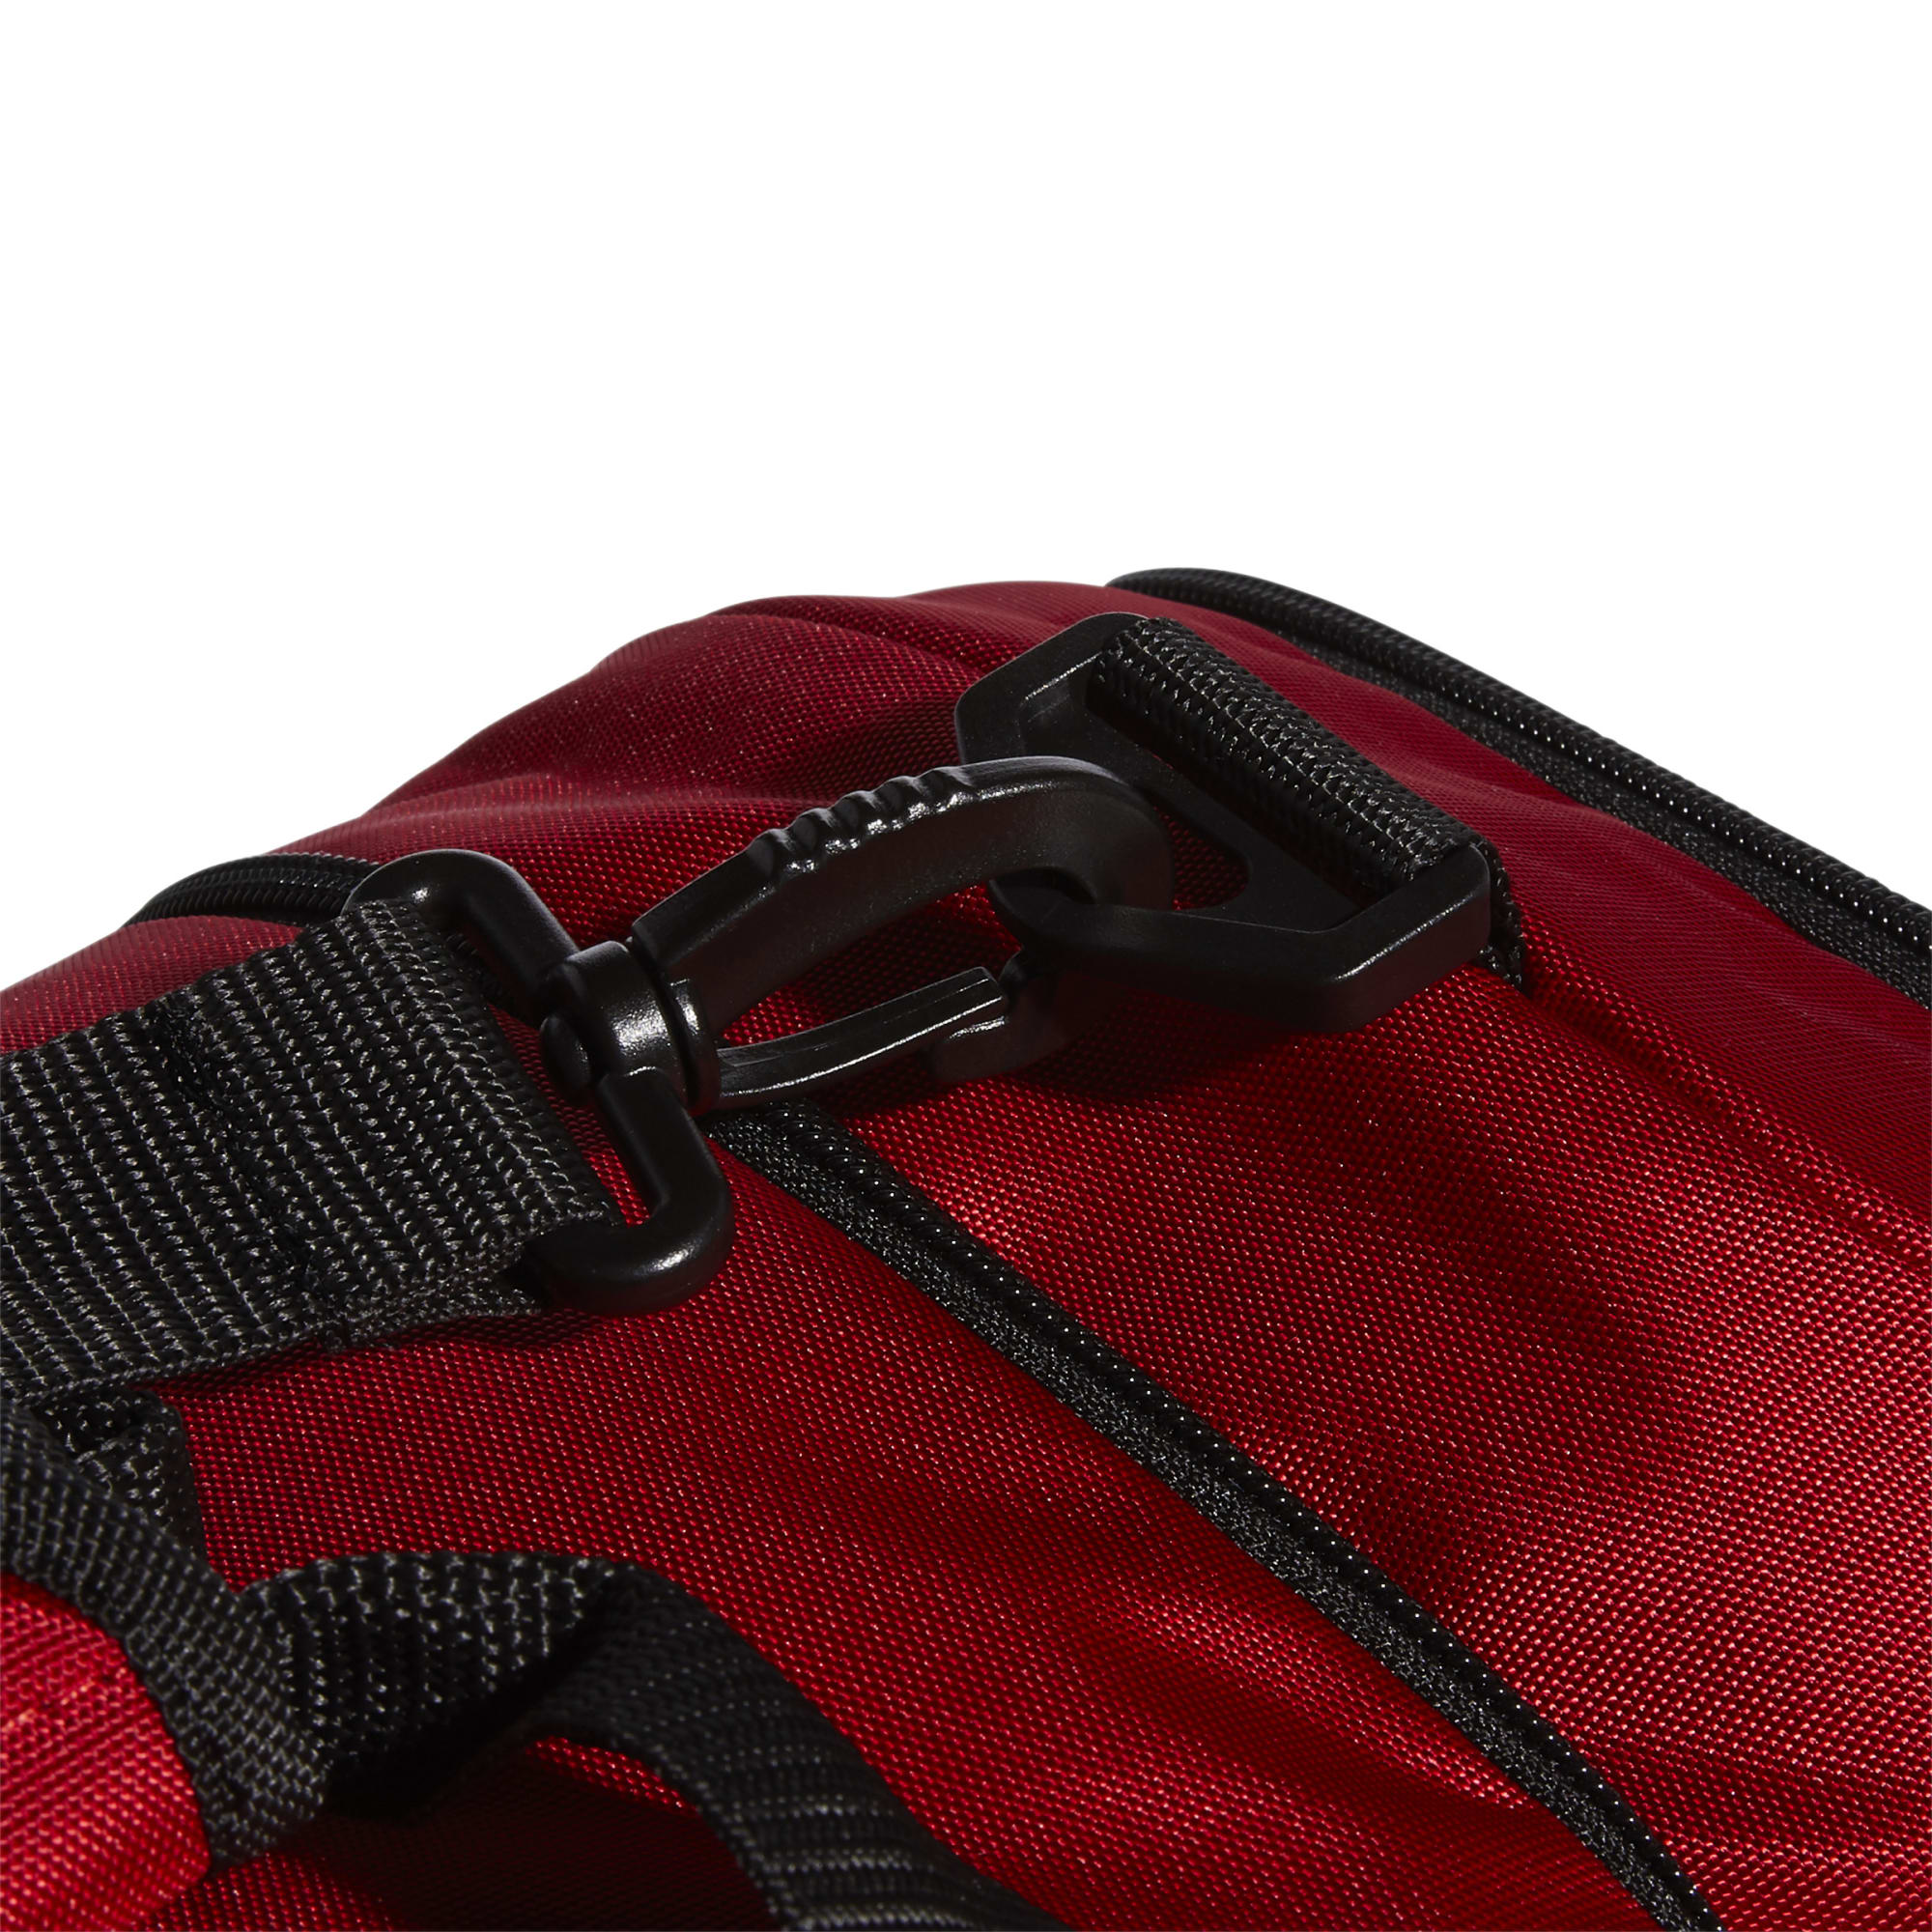 Adidas Defender IV Medium Duffel Bag Red - EW9639